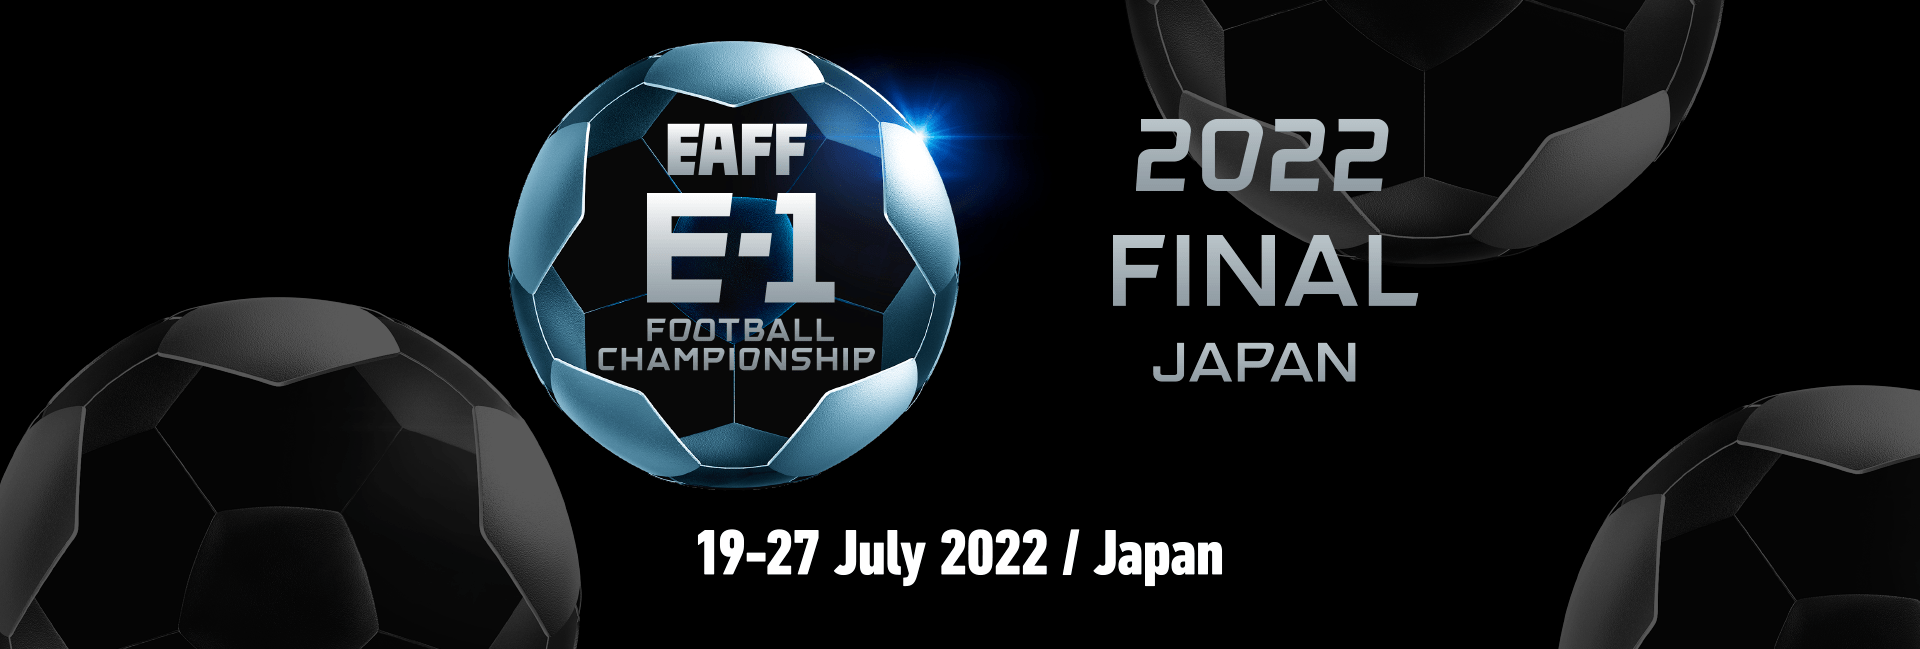 EAFF E-1 Football Championship 2022 Final Japan